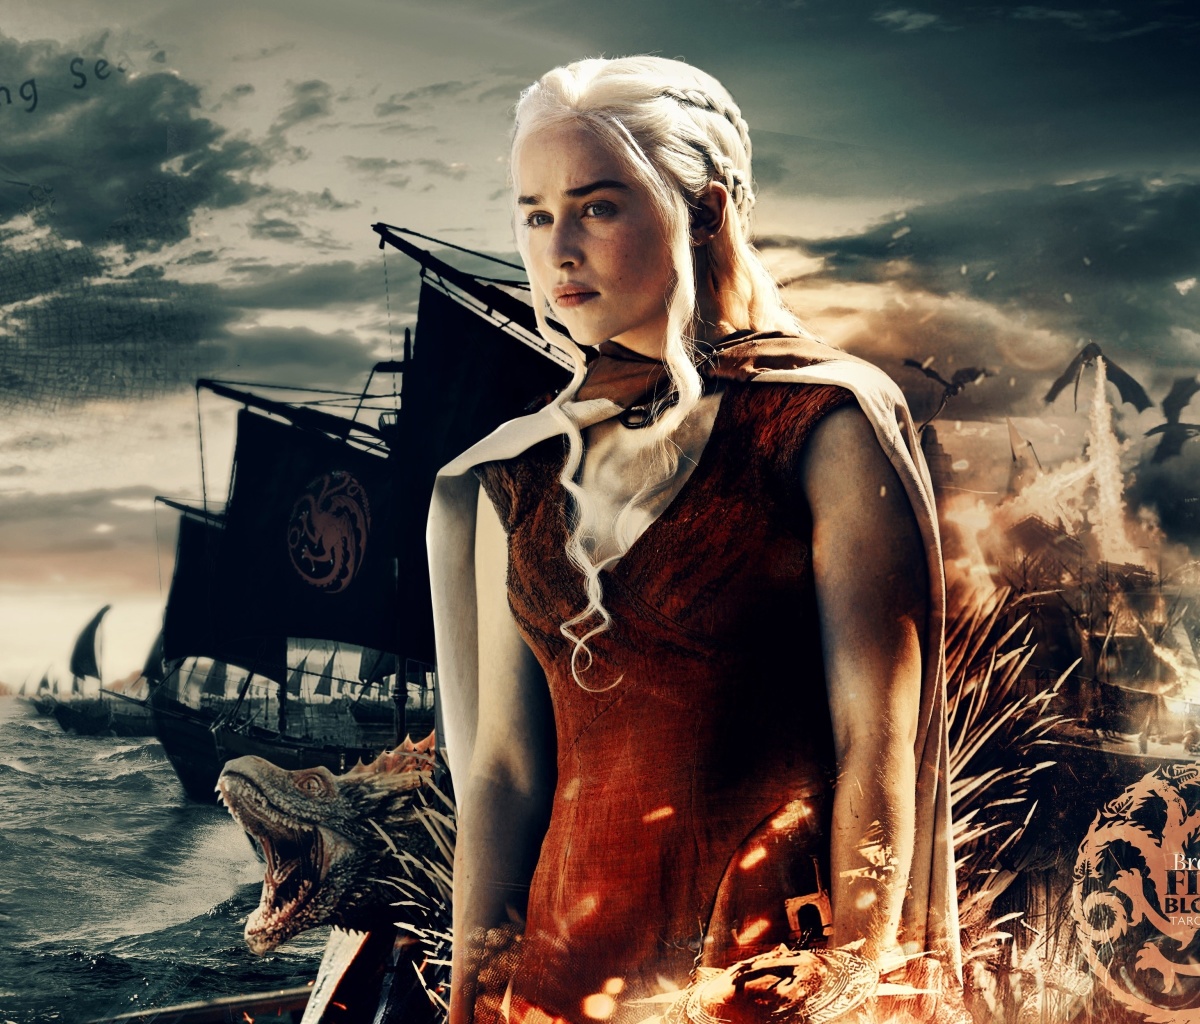 Game of Thrones Daenerys Targaryen wallpaper 1200x1024